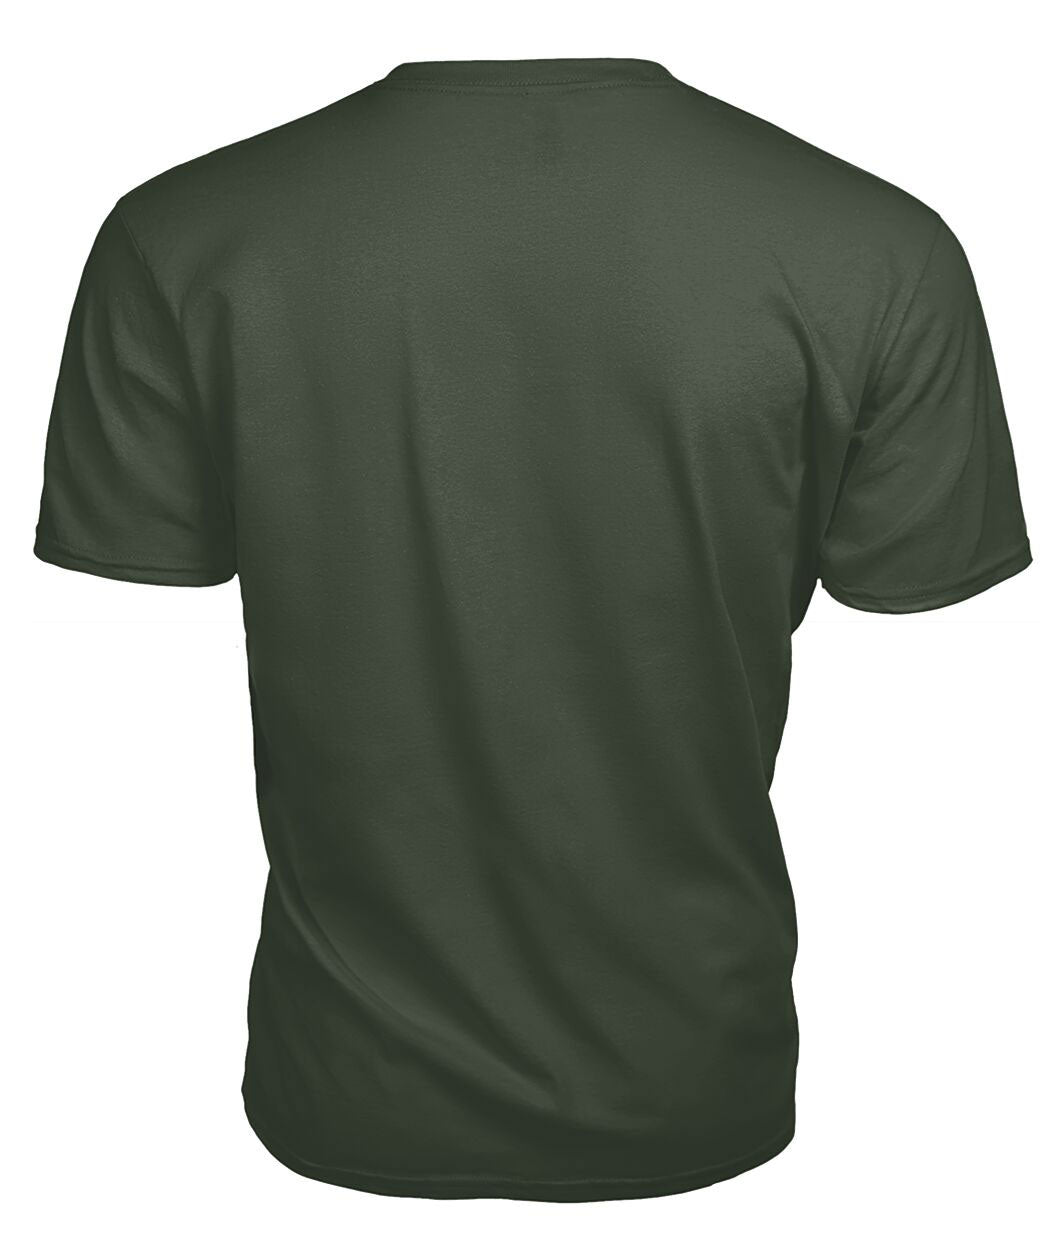 Fergusson Modern Tartan Crest 2D T-shirt - Blood Runs Through My Veins Style